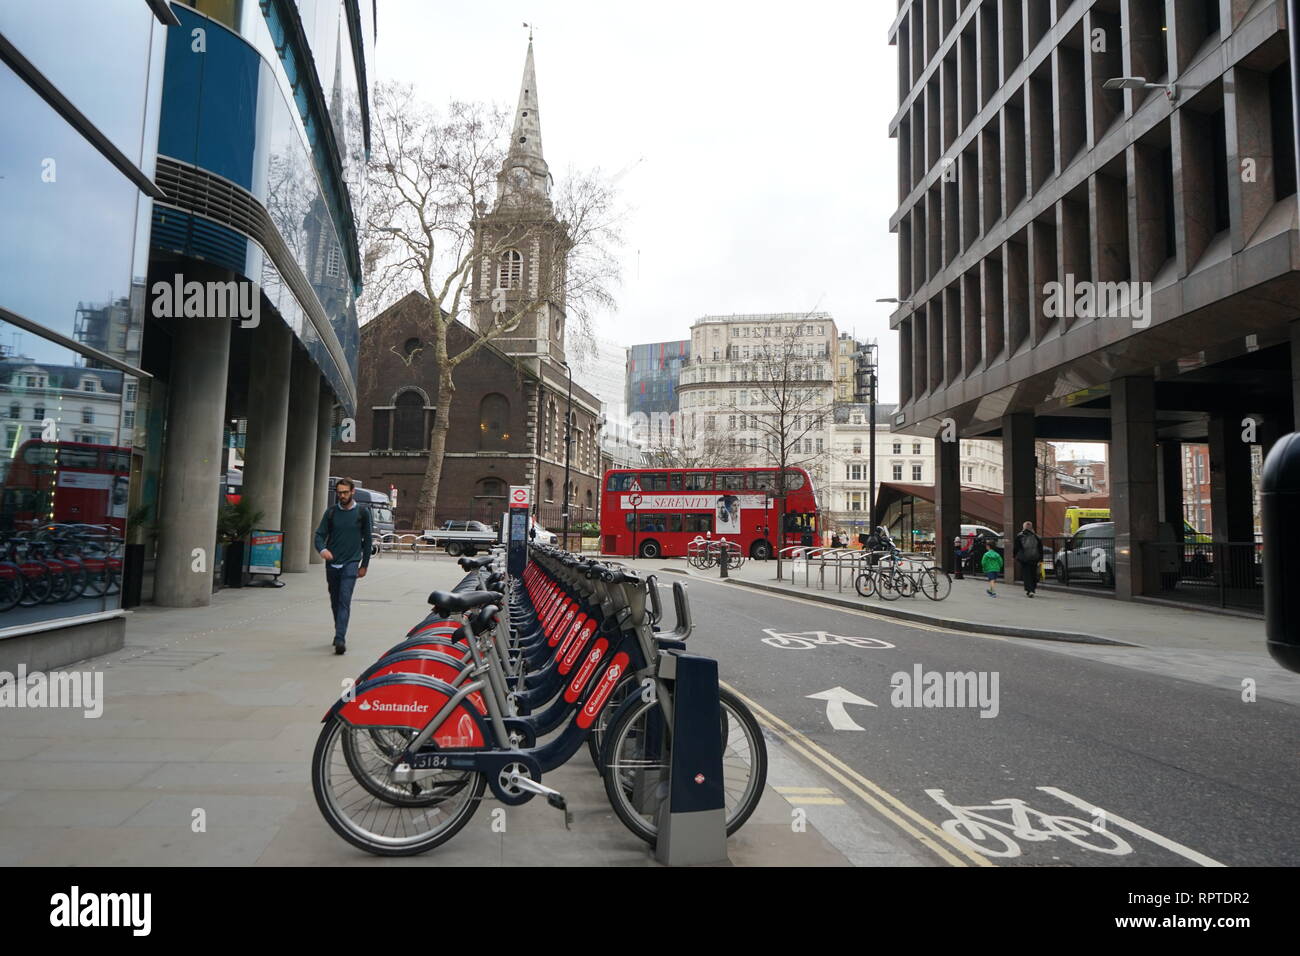 Boris et Santander, vélos, pistes cyclables sur une rue Houndsditch à Algate, Londres, Angleterre, Royaume-Uni Banque D'Images